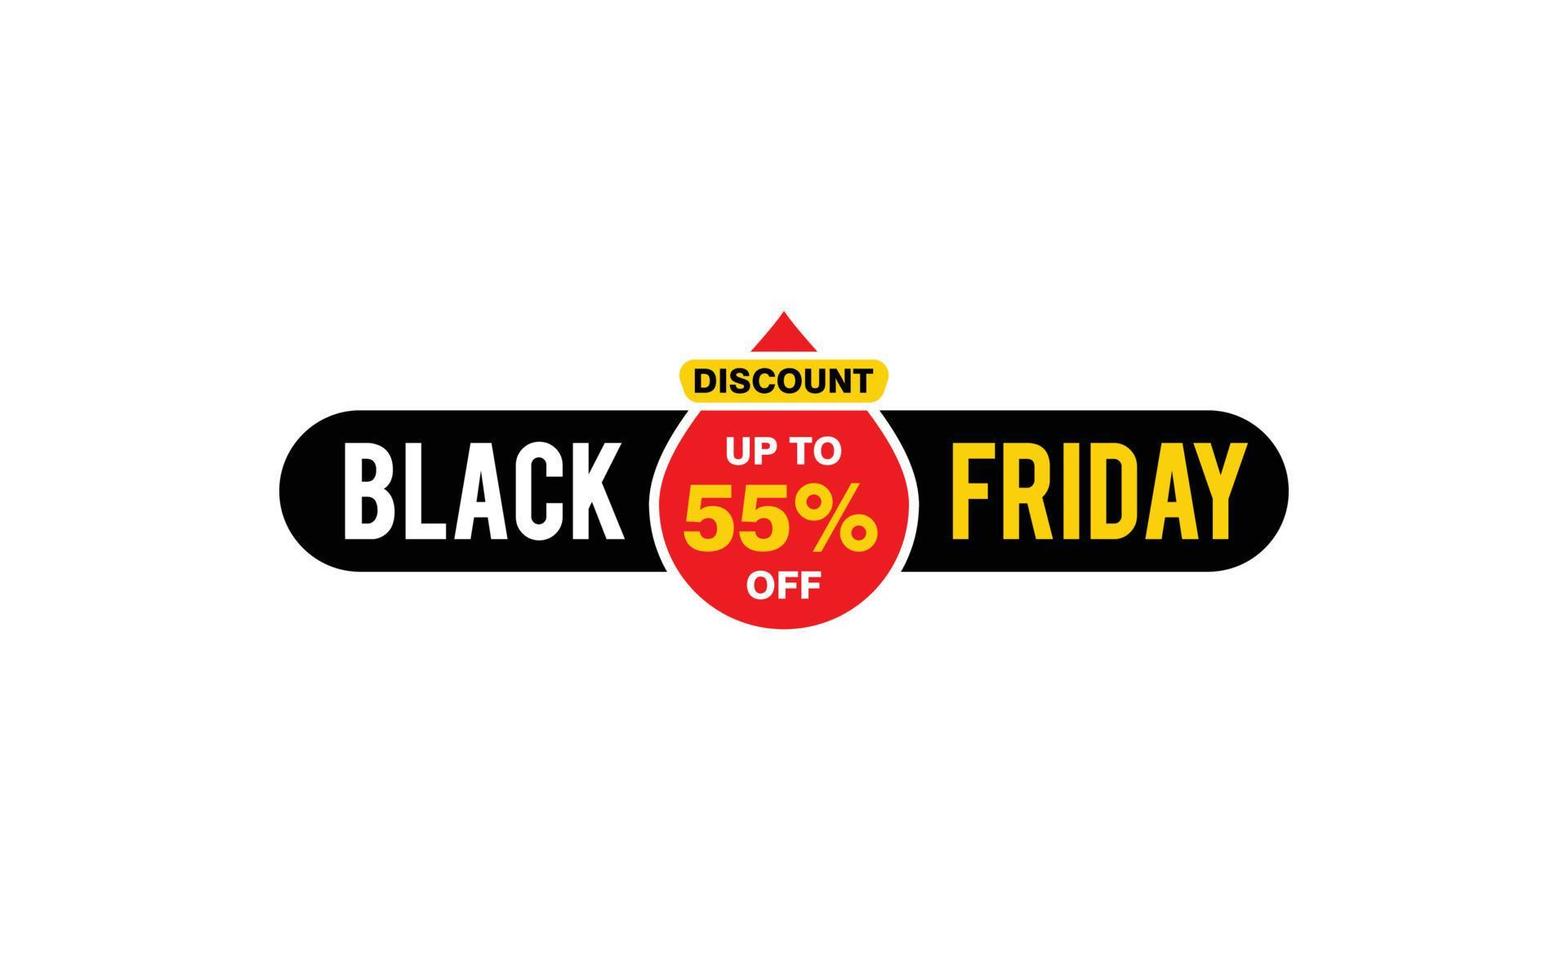 Oferta de viernes negro de 55 por ciento de descuento, liquidación, diseño de banner de promoción con estilo de etiqueta. vector